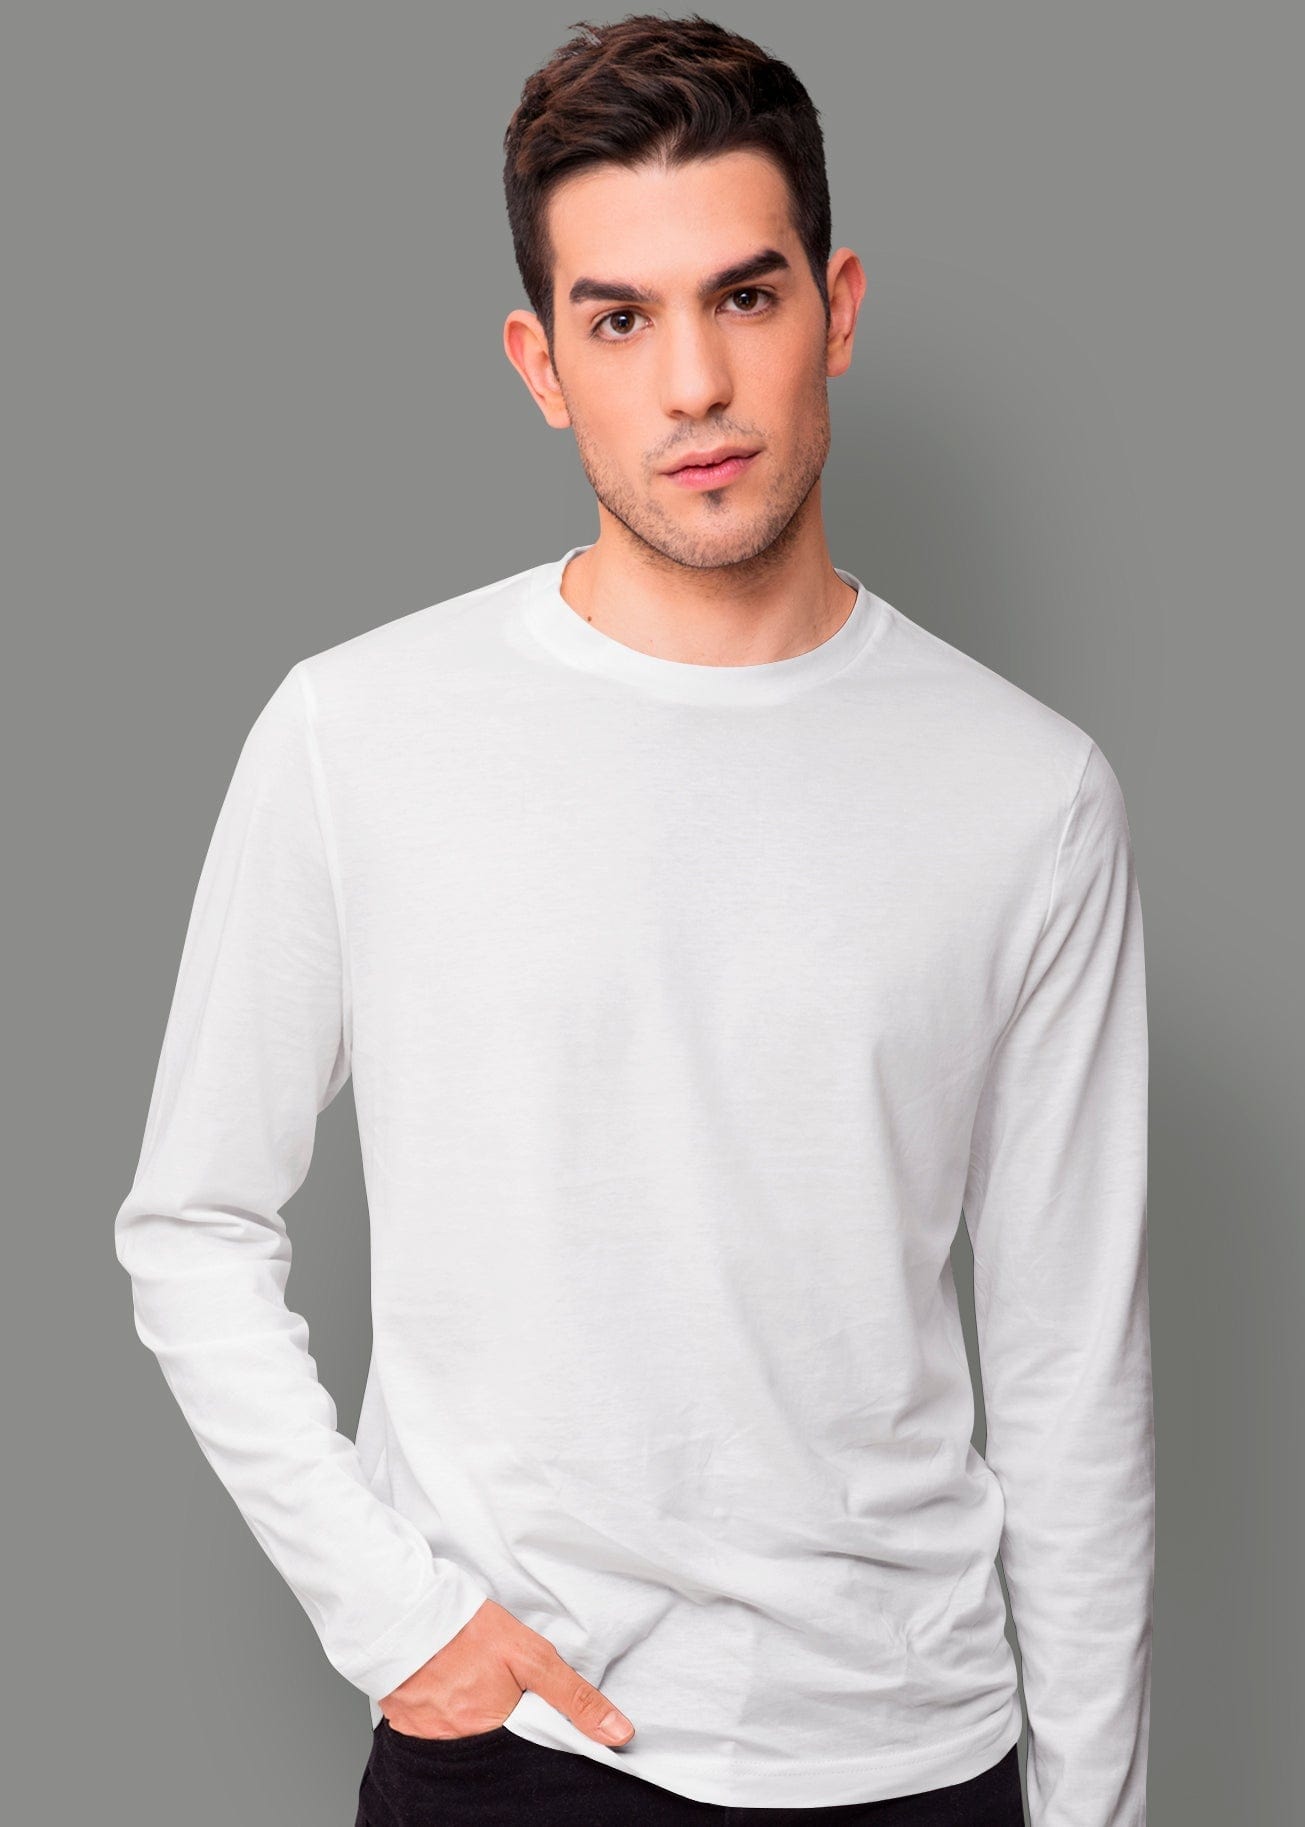 Pick Any 4 - Plain Full Sleeve T-Shirts Combo